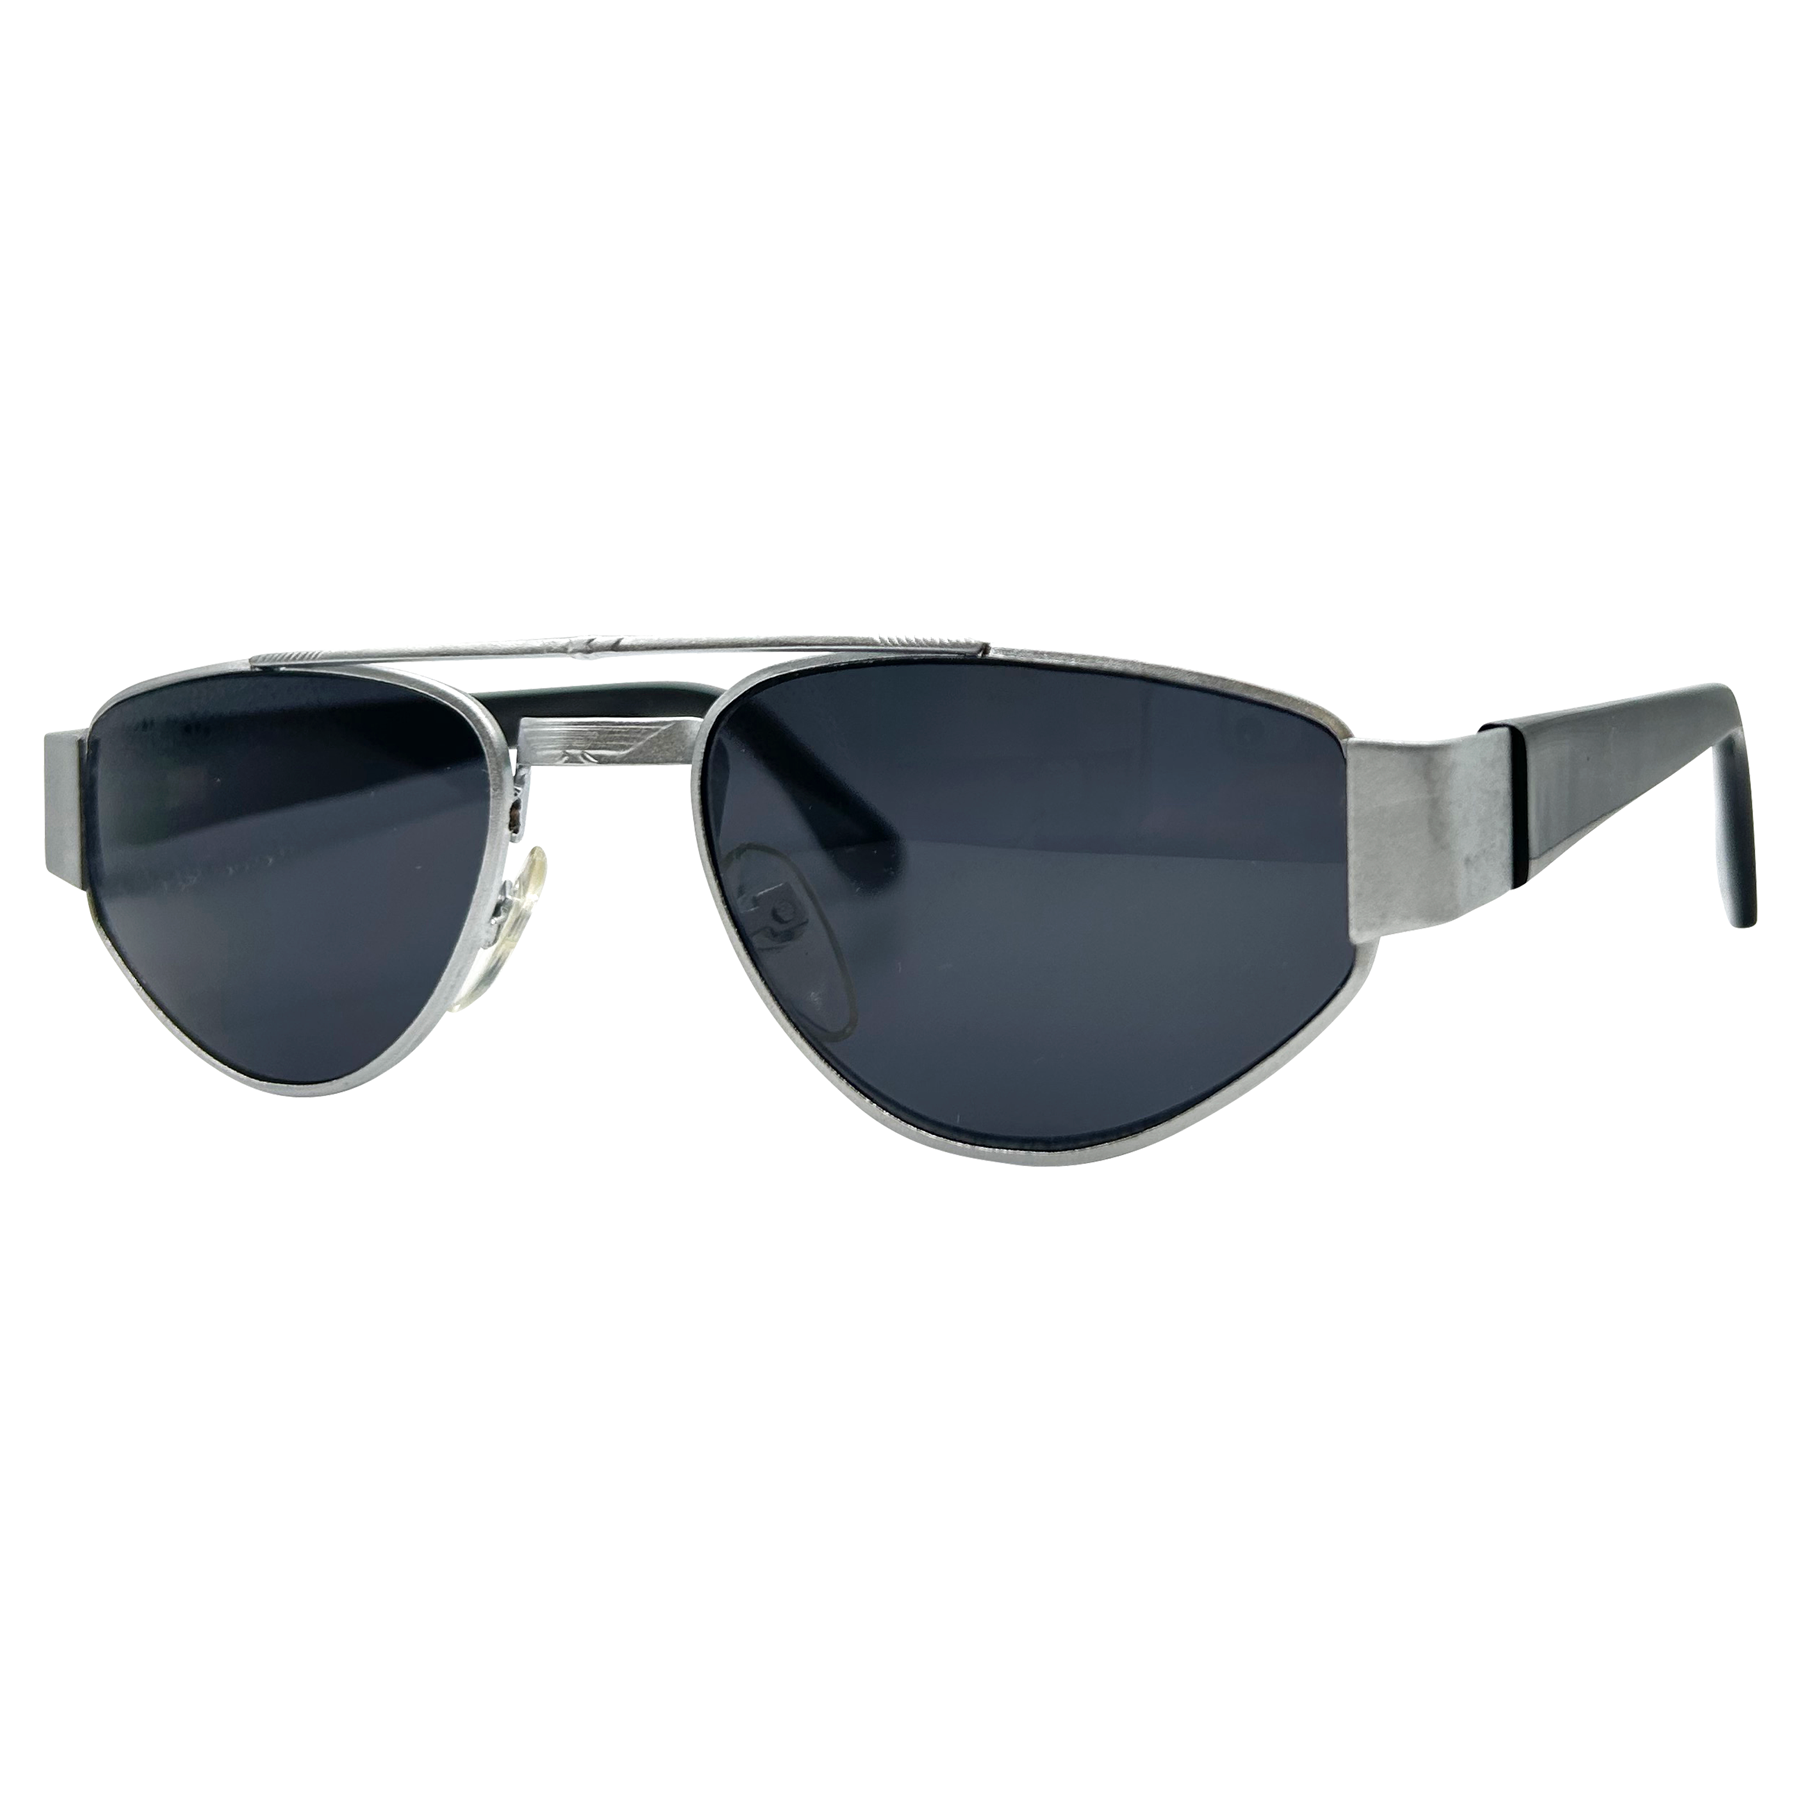 ZZYZX Black Silver/Super Dark Sports Sunglasses